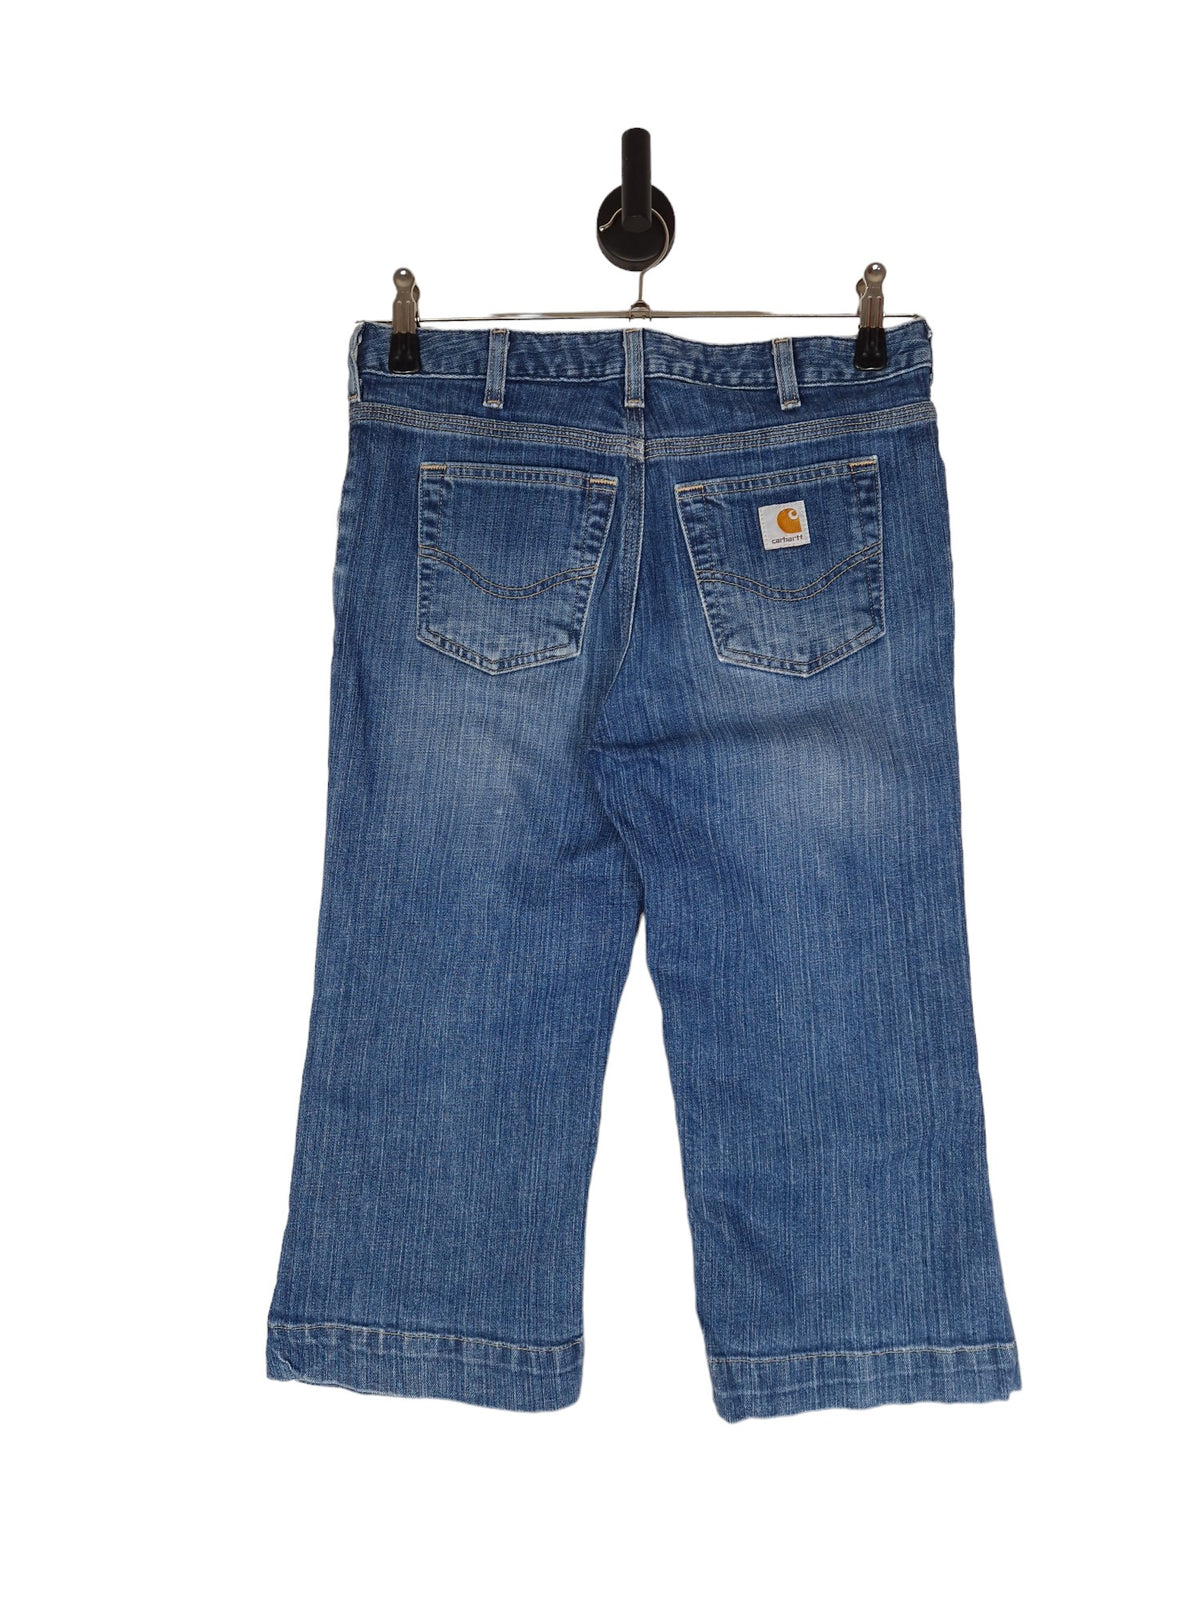 Carhartt Capri Cut Of Jeans - Size UK 10